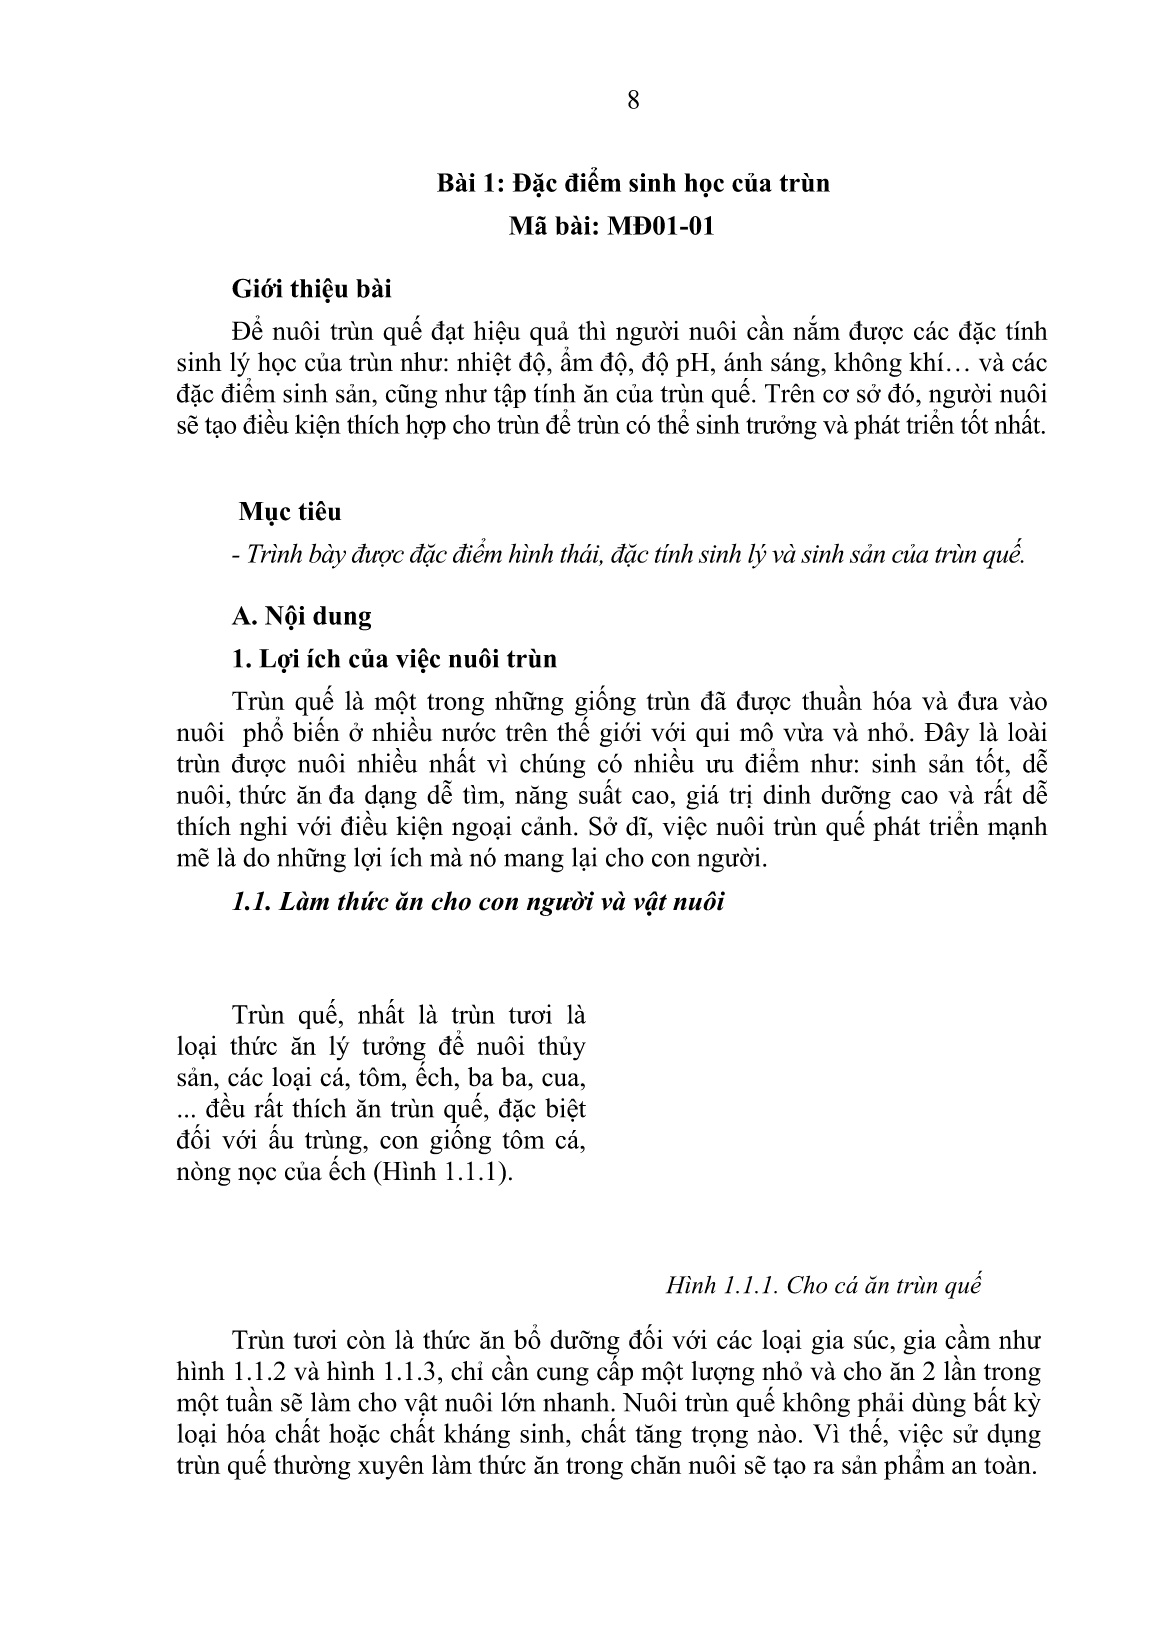 Giáo trình mô đun Chuẩn bị nuôi trùn (Trình độ: Sơ cấp nghề) trang 10